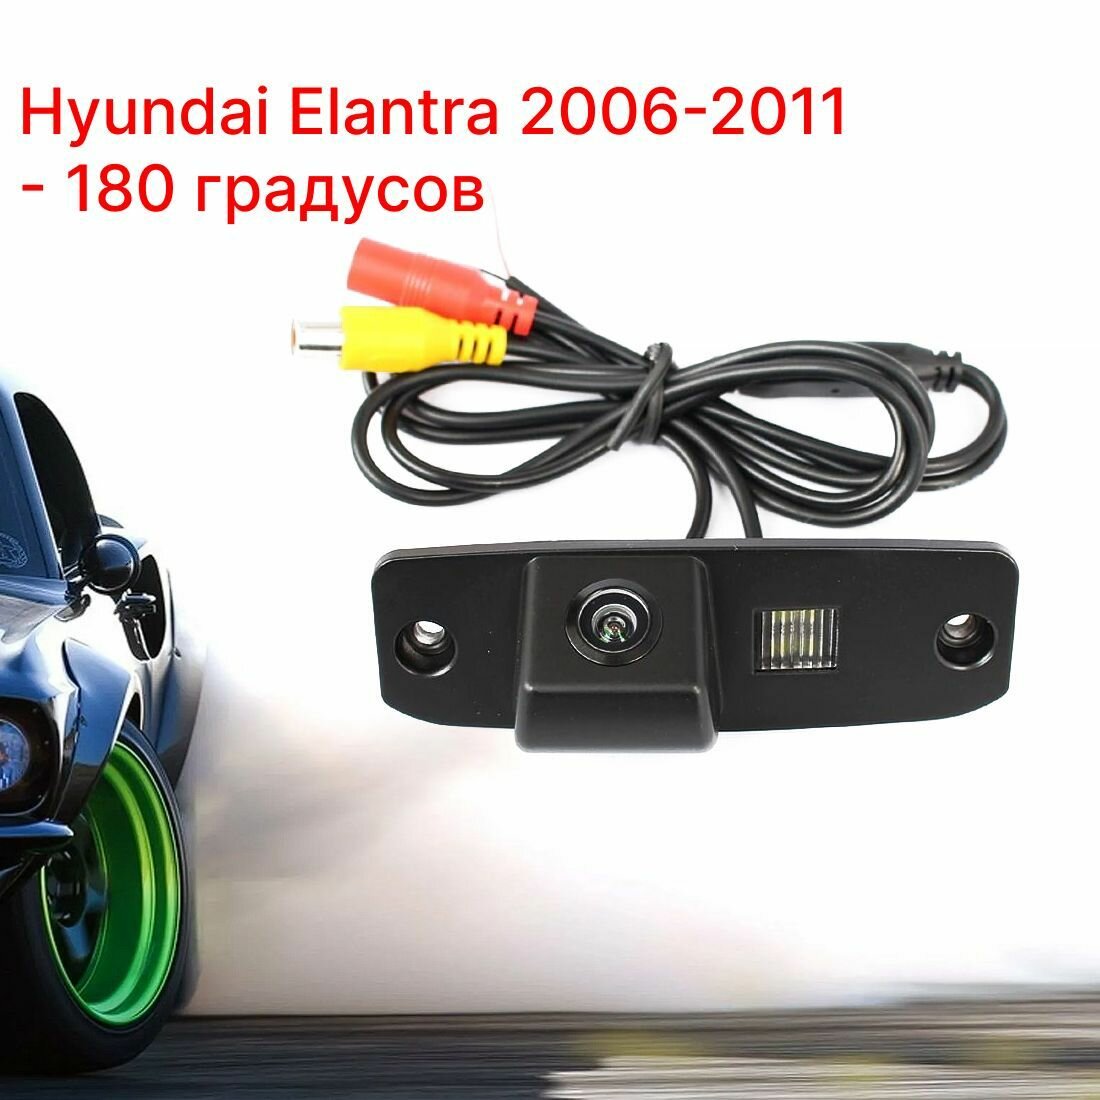 Камера заднего вида Хендай Элантра - 180 градусов (Hyundai Elantra - 2006-2011)